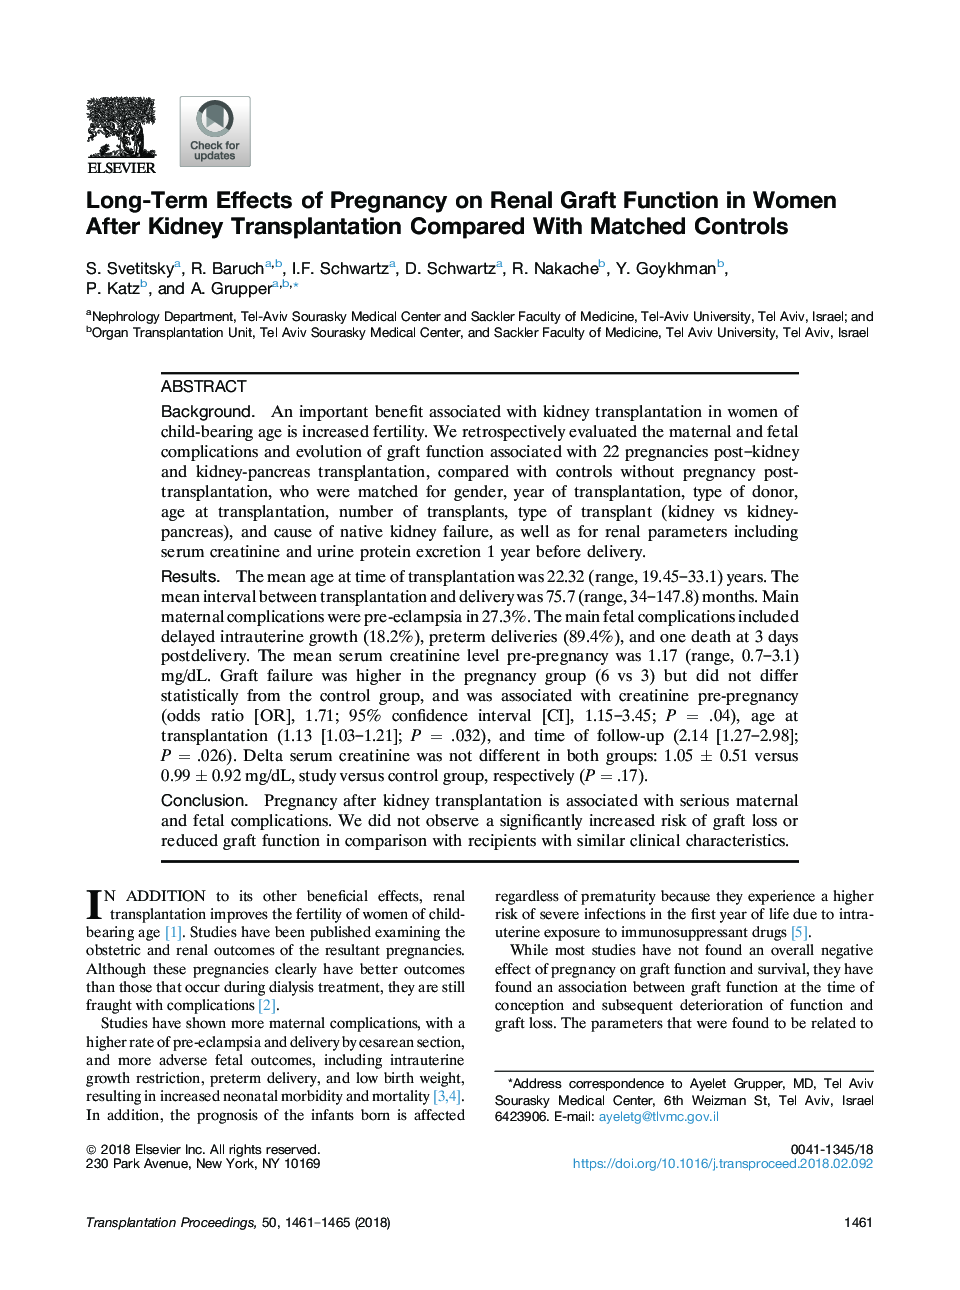 تأثیر طولانی مدت بارداری بر عملکرد پیوند کلیه در زنان پس از پیوند کلیه در مقایسه با کنترل های متقابل 